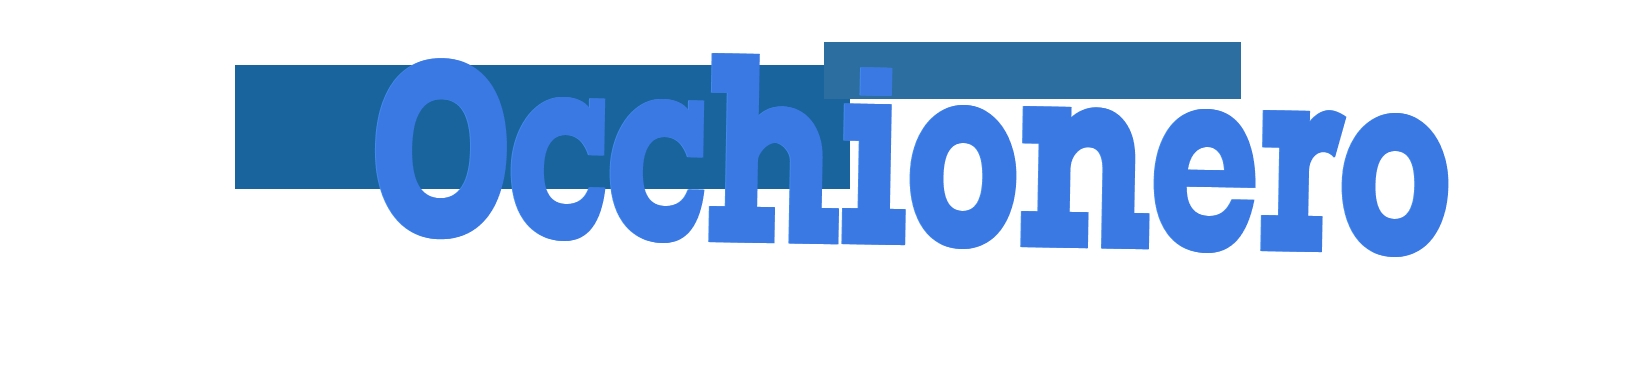 logo Occhionero